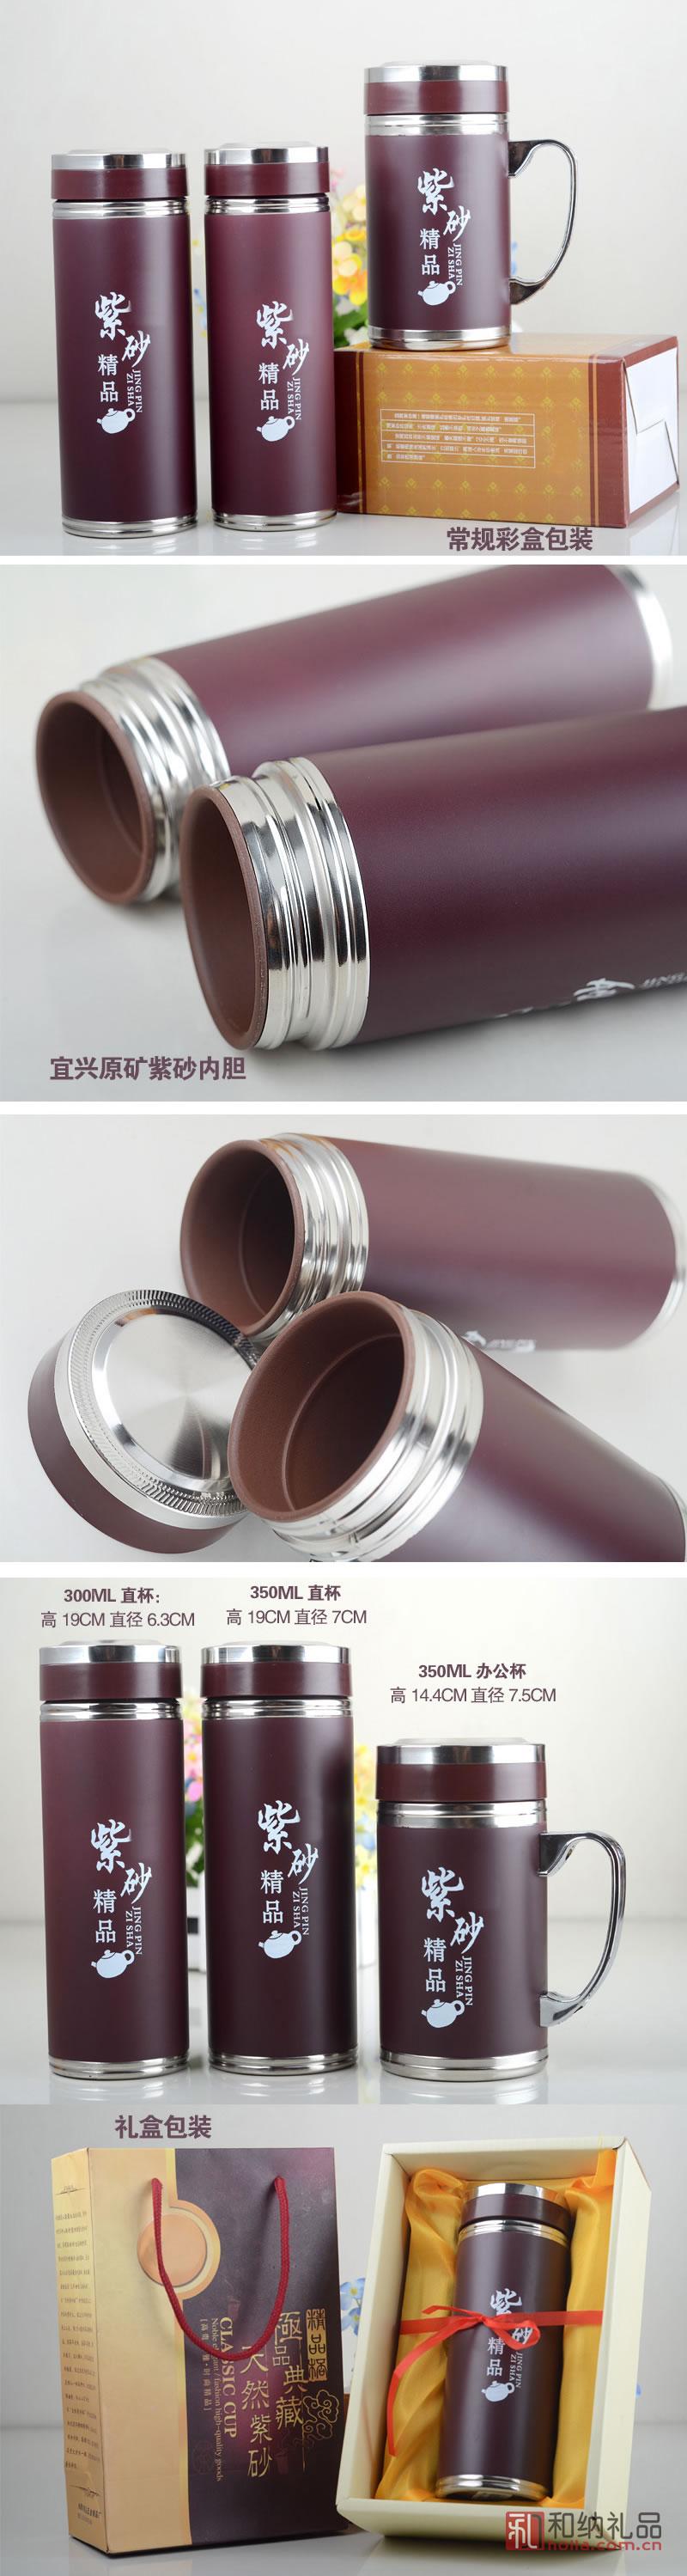 紫砂保温杯图文-1142-001